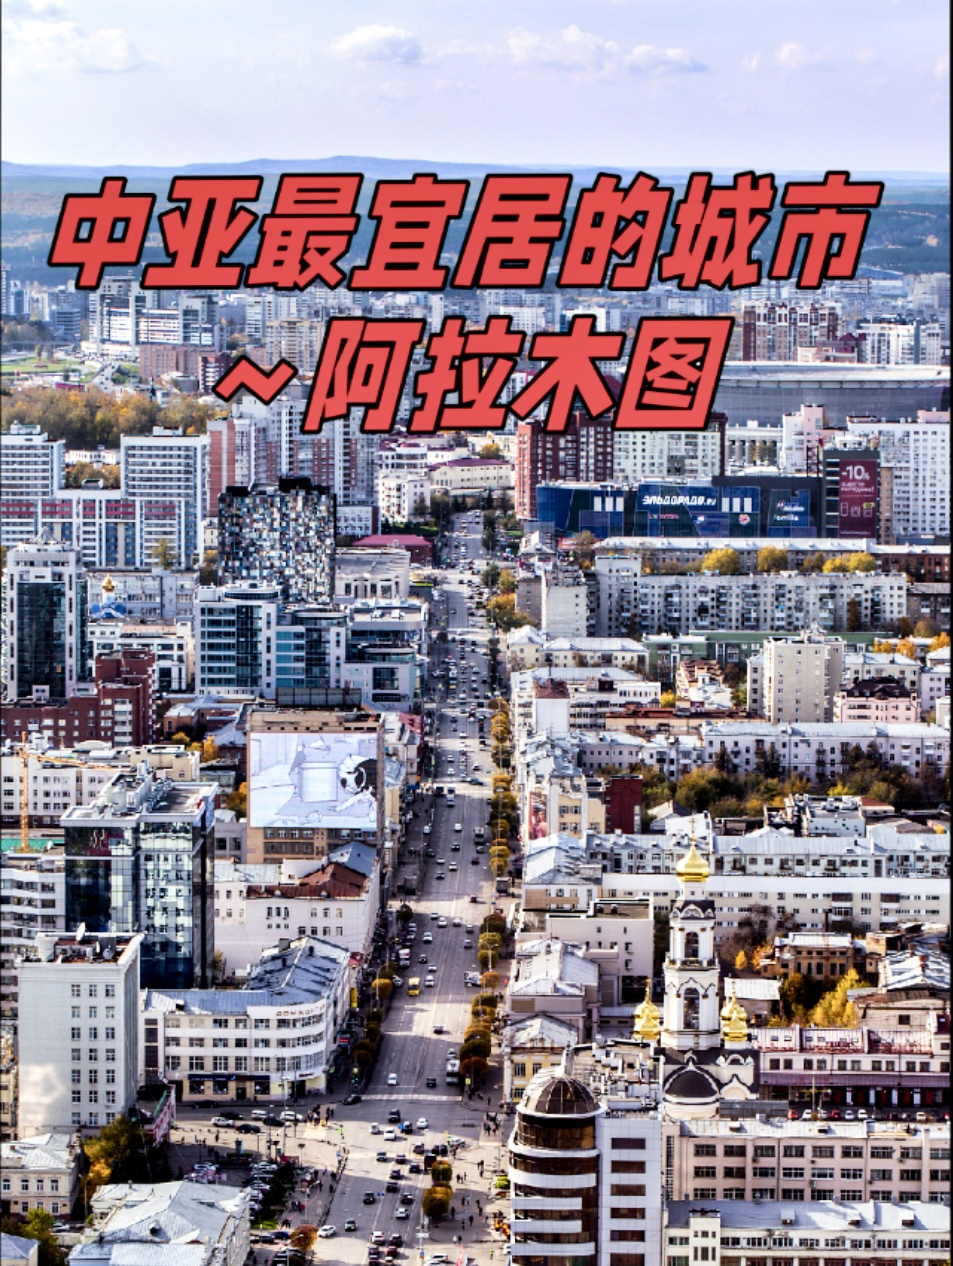 为何说中亚最宜居城市是阿拉木图？